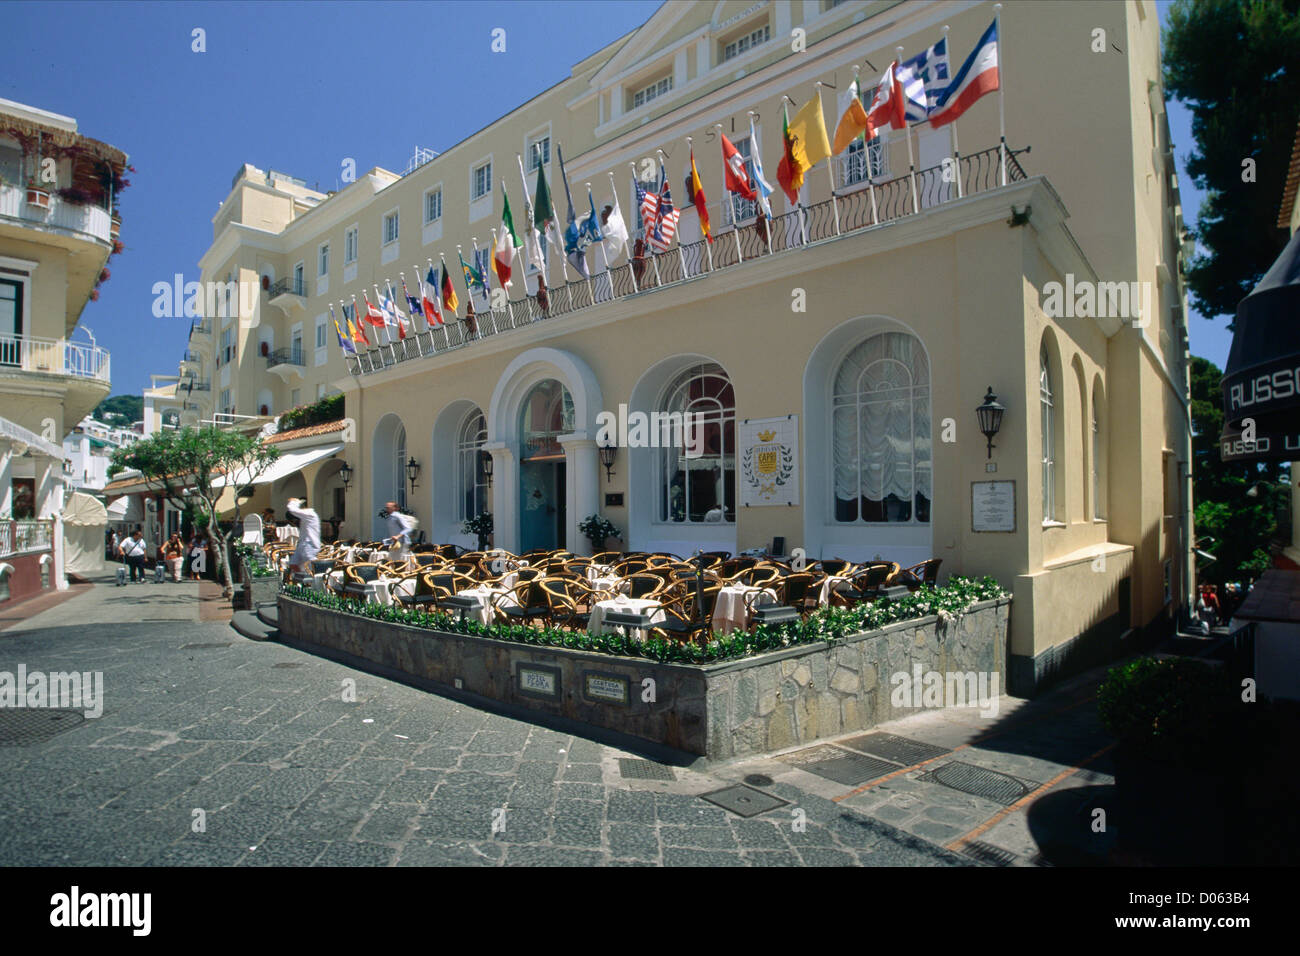 Vue extérieure de l'hôtel Grand Hotel Quisisana avec drapeaux colorés, Capri, Campanie, Italie Banque D'Images